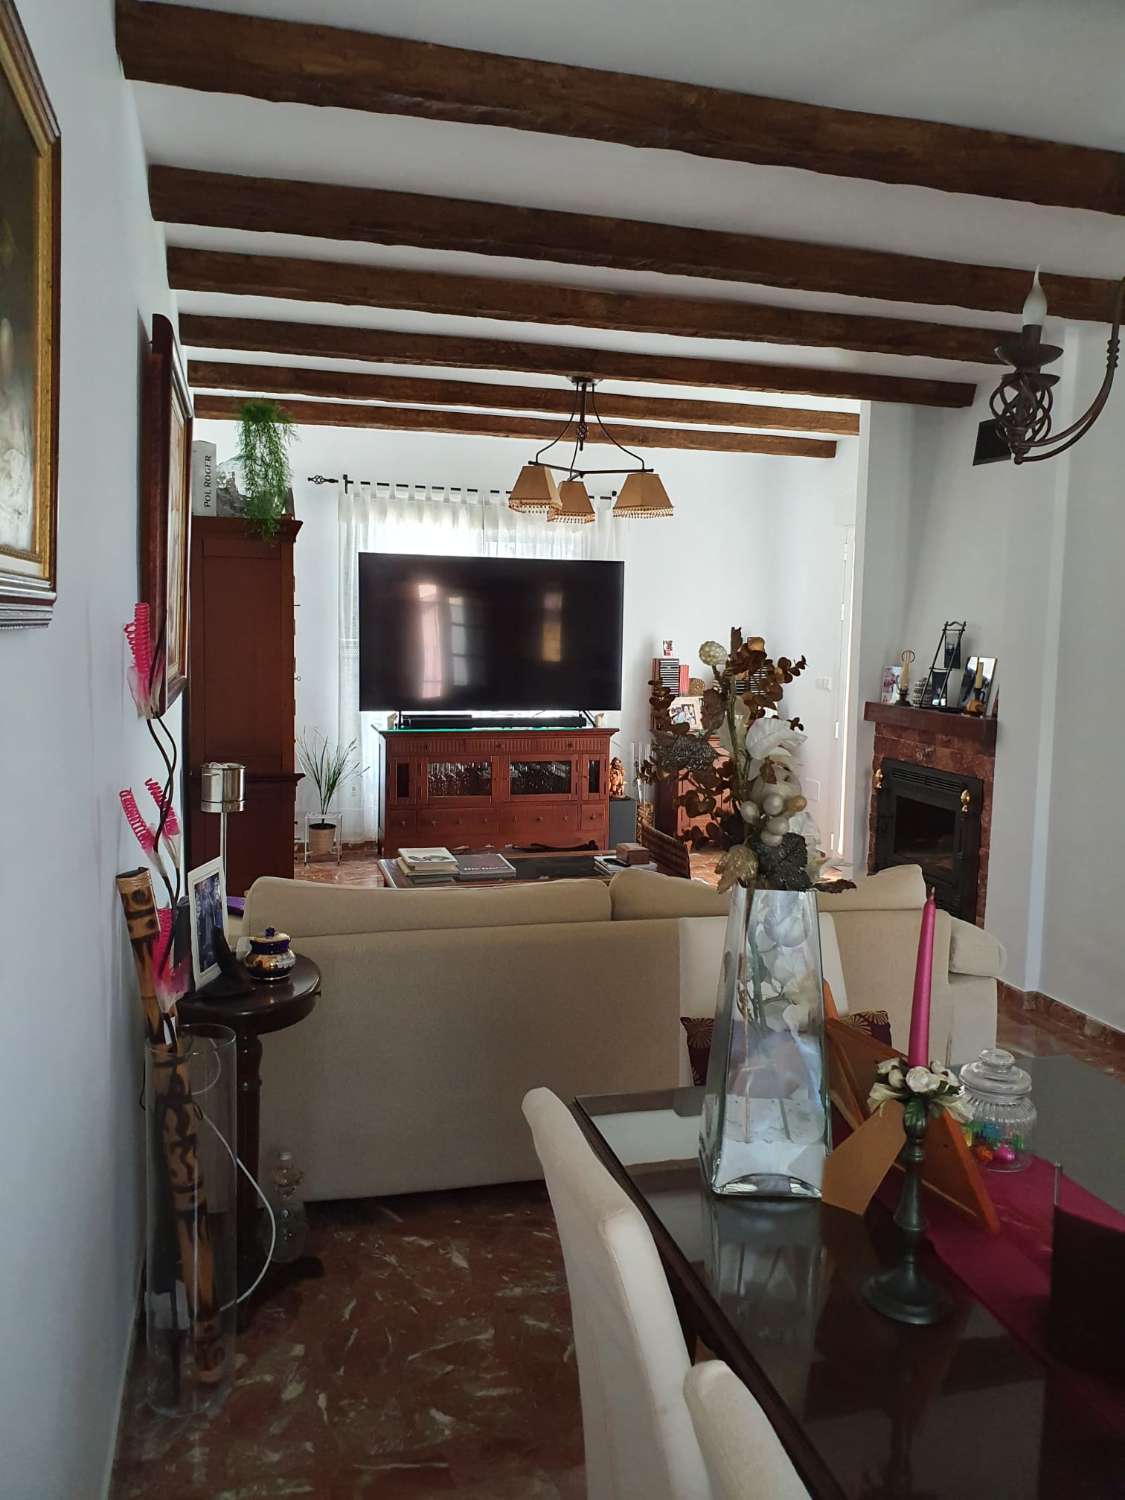 Продается отличный двухквартирный дом в Торре-дель-Мар.